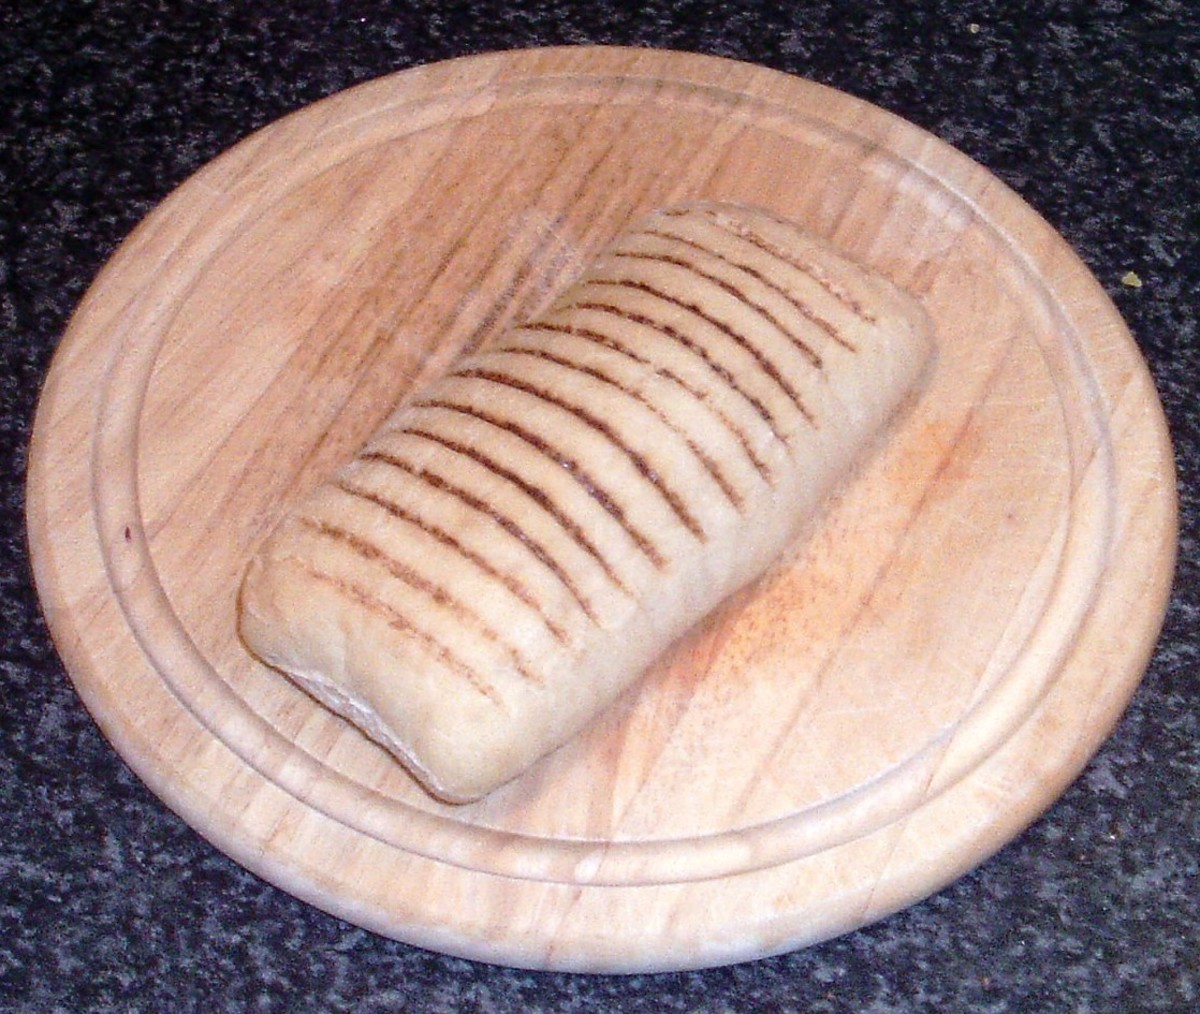 Panini bread roll